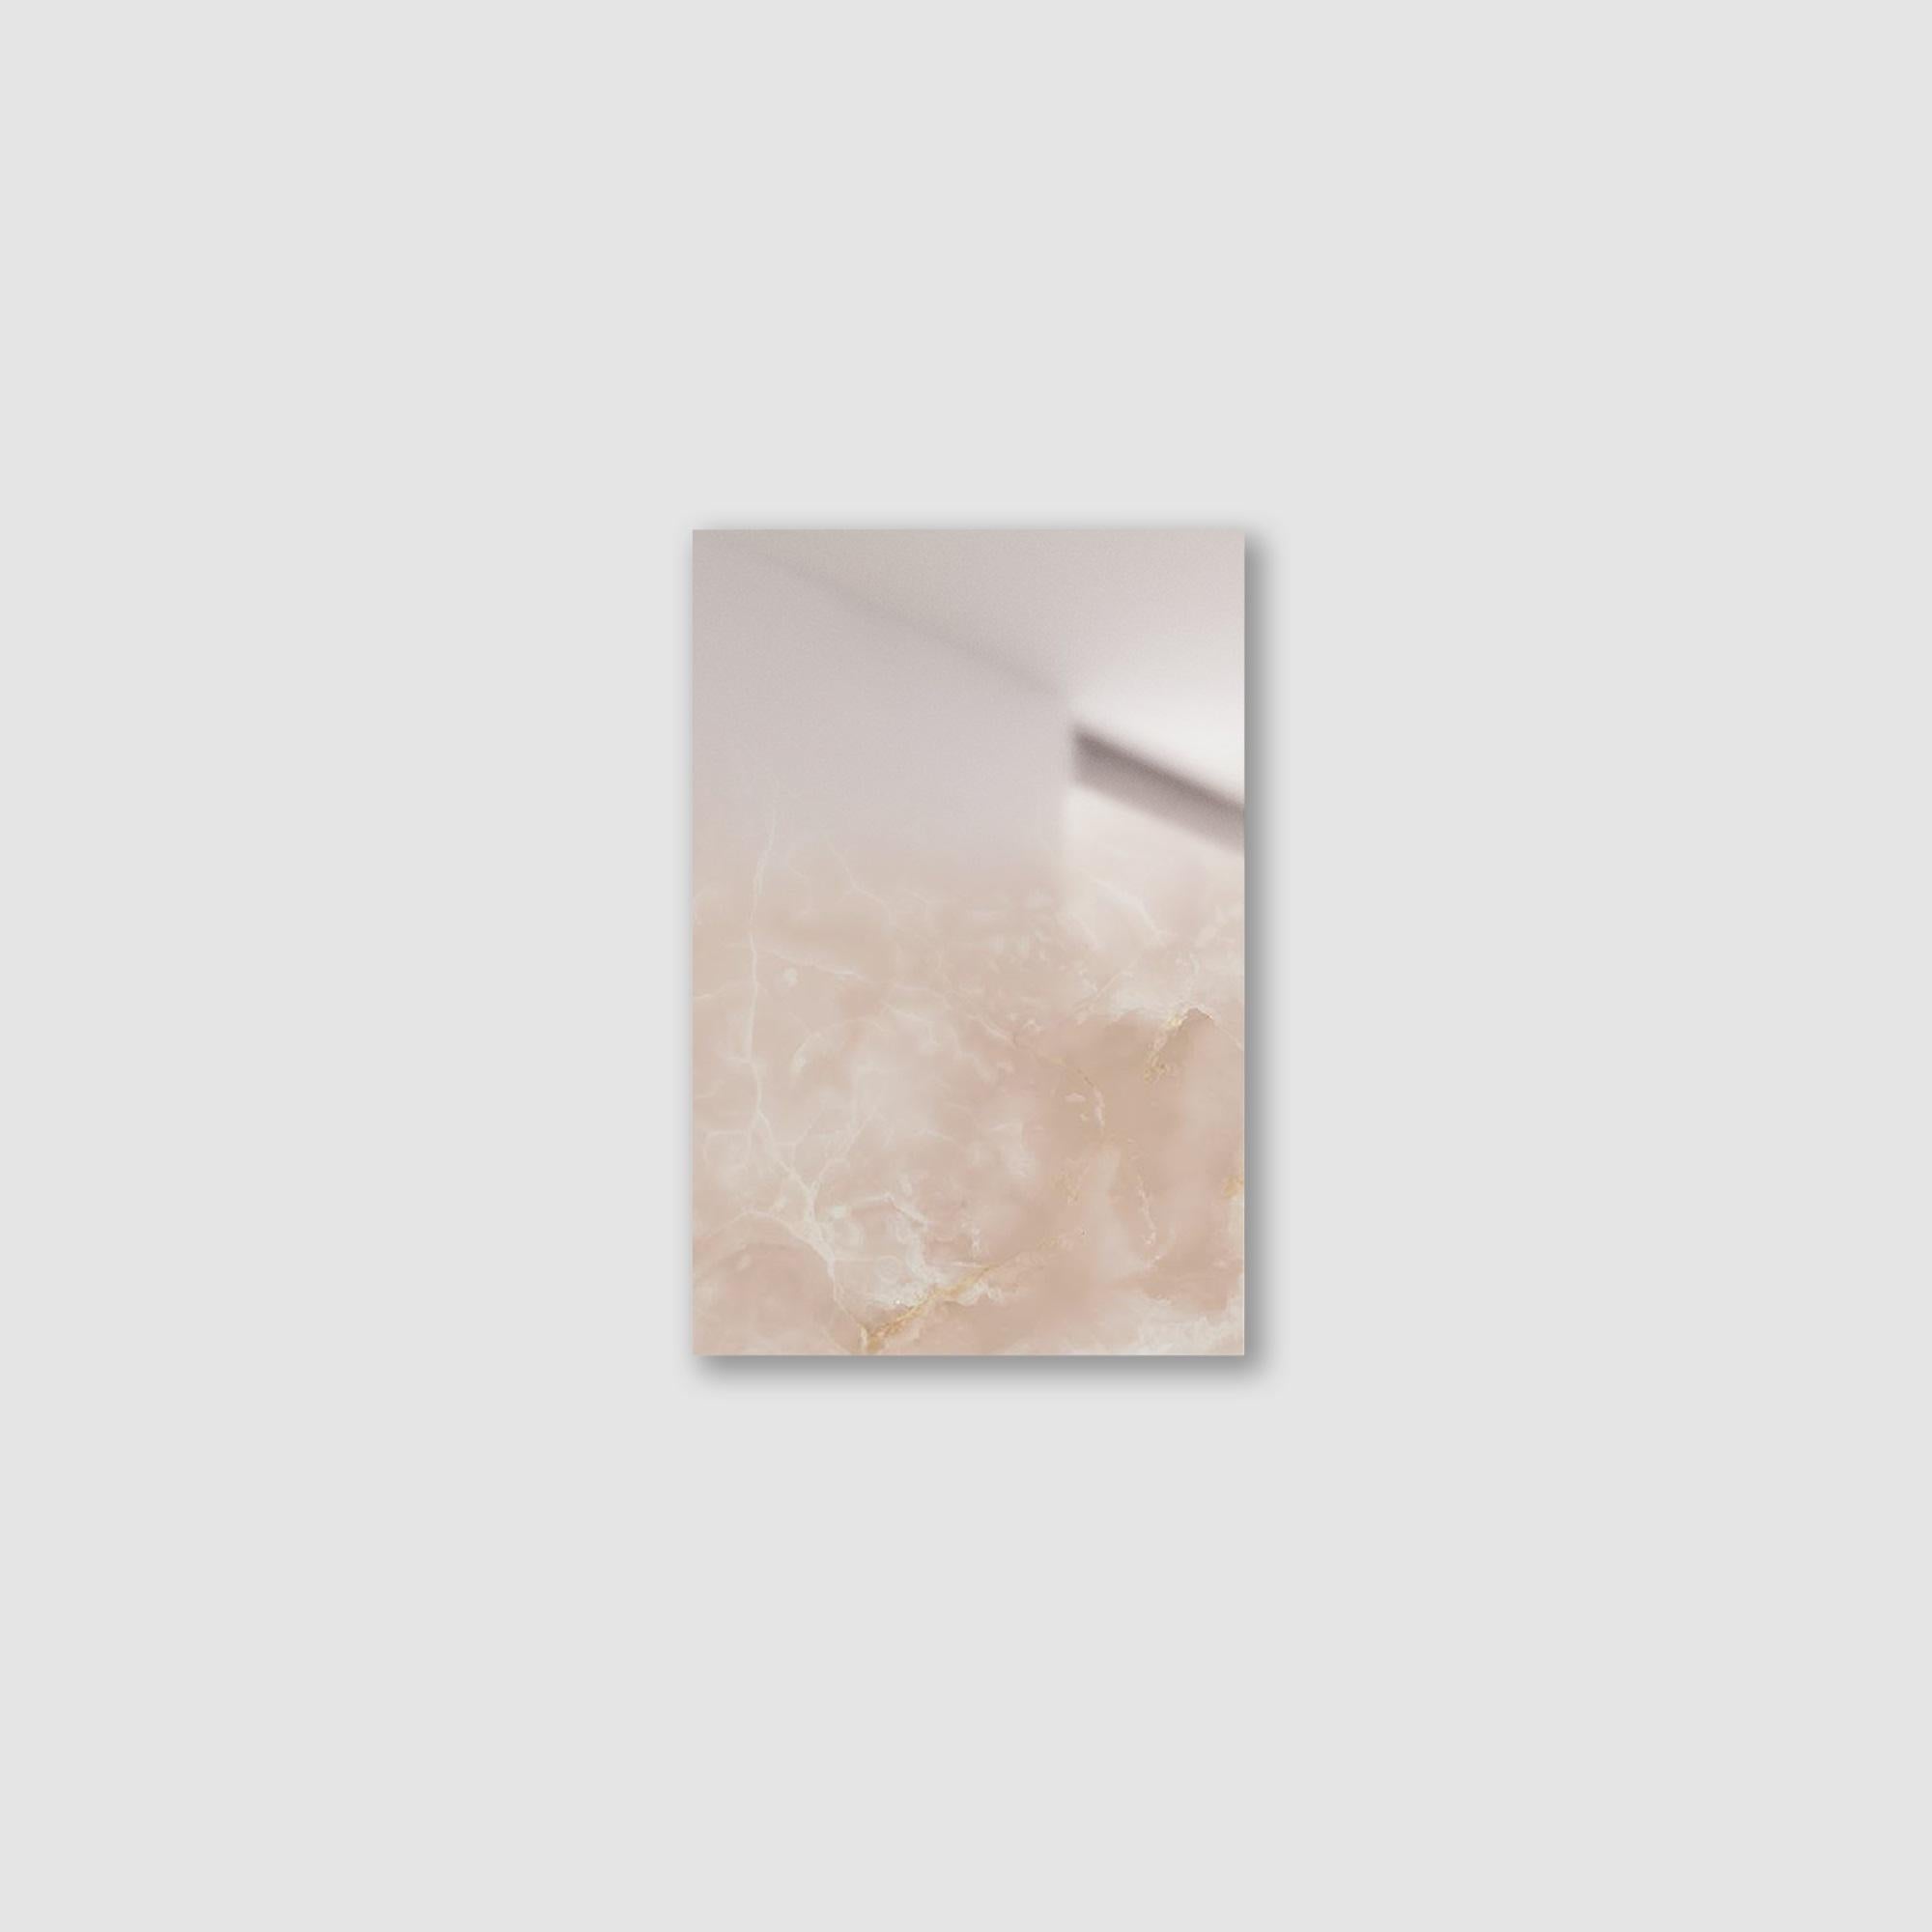 Mirror Zero XS Rosa von Formaminima
Limitierte Auflage von 200 Stück. 
Abmessungen: T 0,5 x B 21,5 x H 29 cm. 
MATERIALIEN: Rosafarbener Onyx mit handgeschliffenen Kristallschichten, von Hand aufgetragener, verblassender Hochglanzlack und bündige